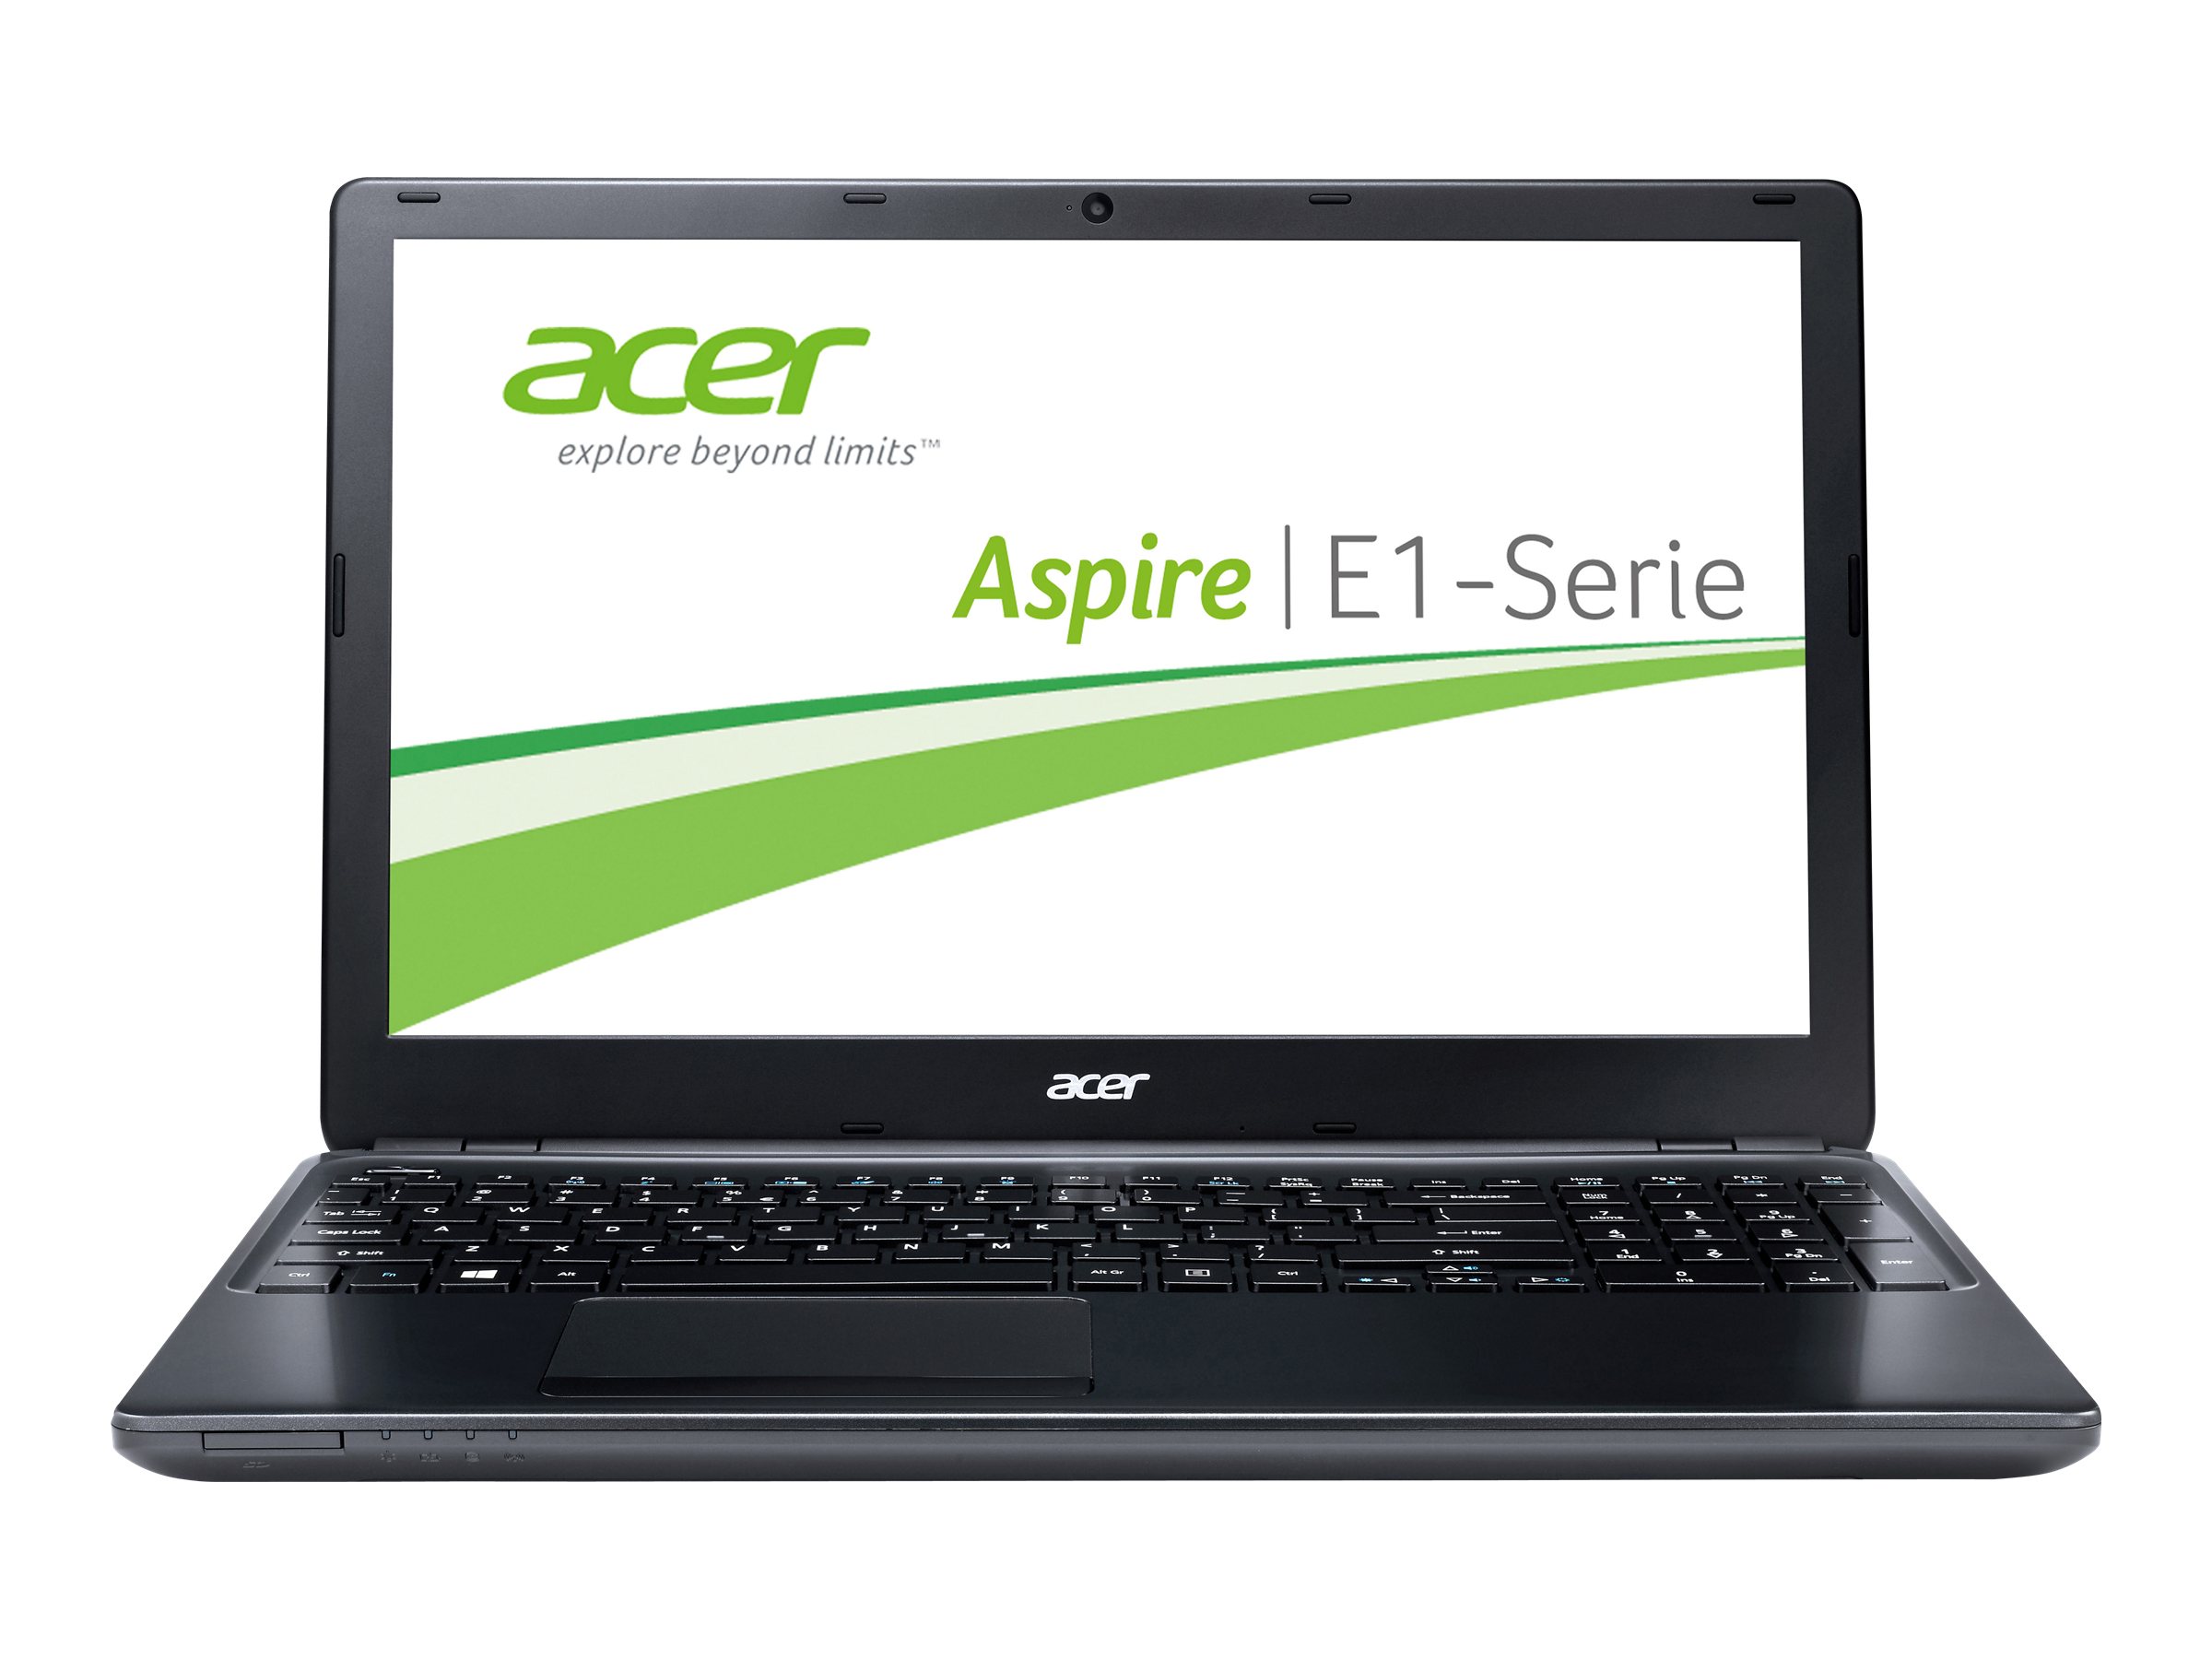 Acer Aspire E1 (510)